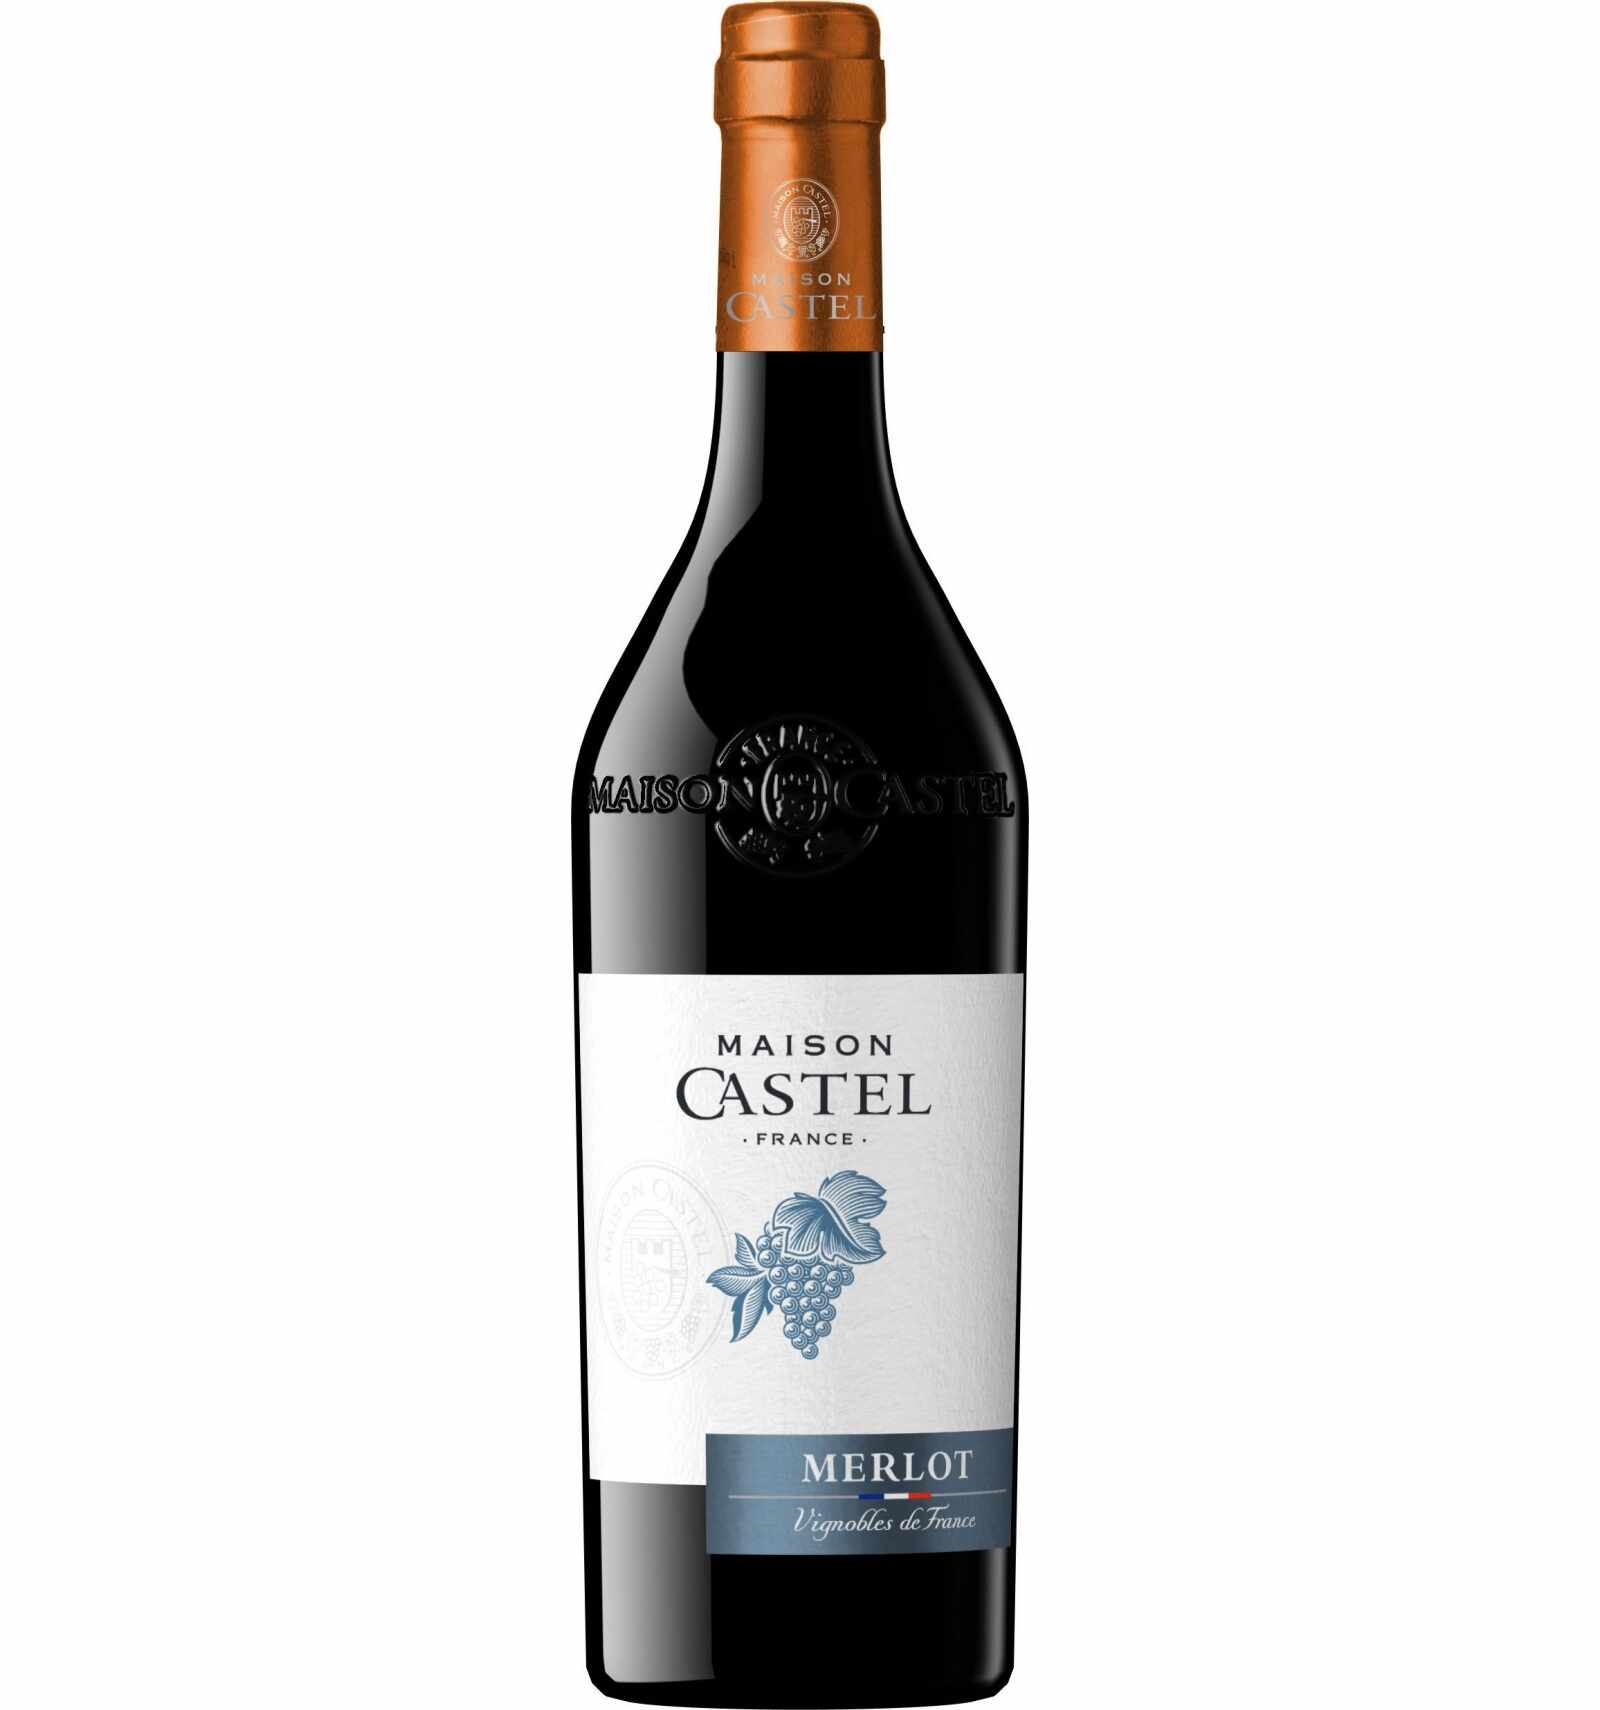 Vin rosu, Merlot, Maison Castel Bordeaux, 12.5% alc., 0.75L, Franta